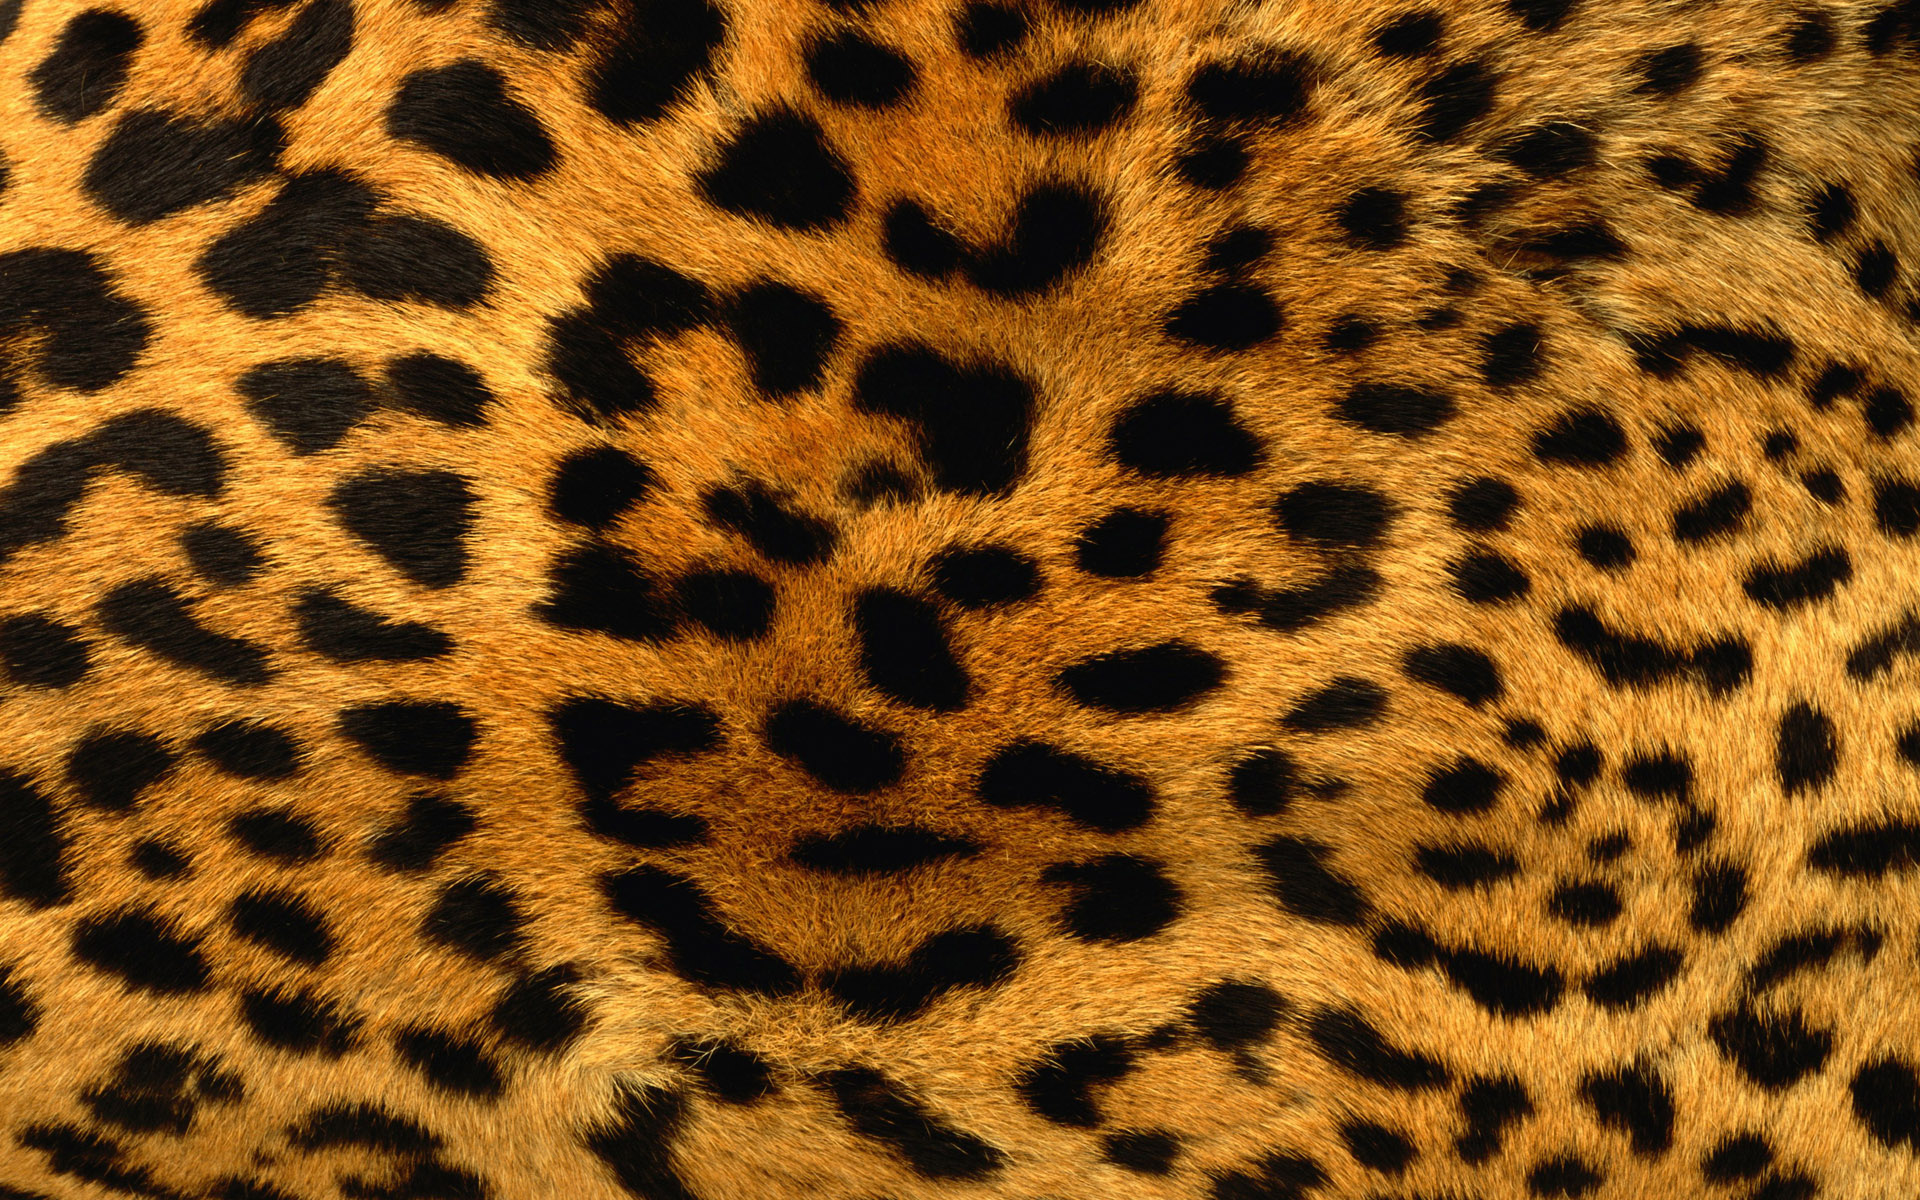 Leopard Print